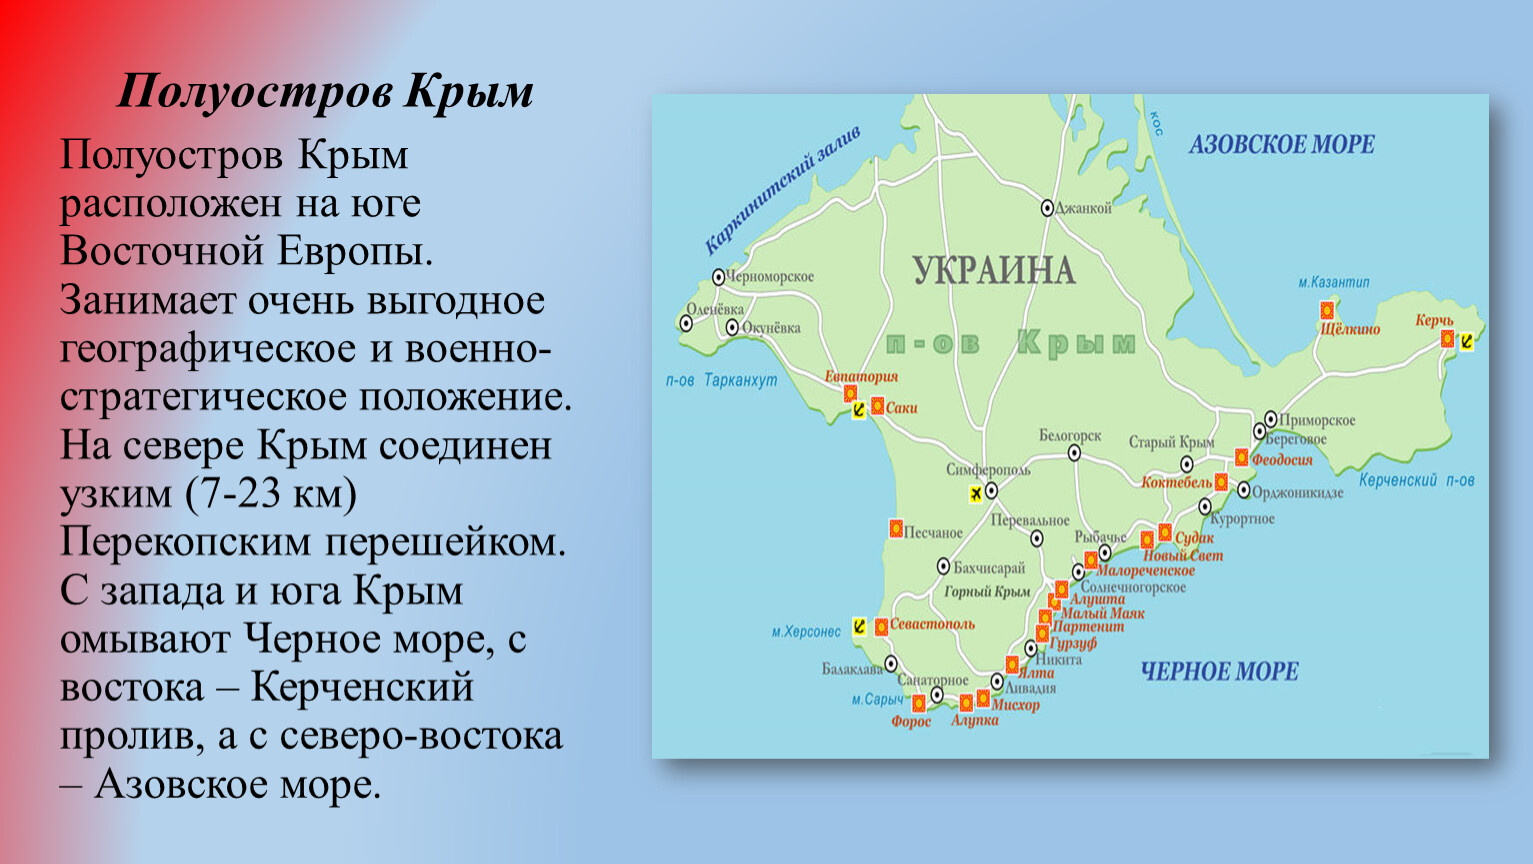 Полуостров Крым расположен